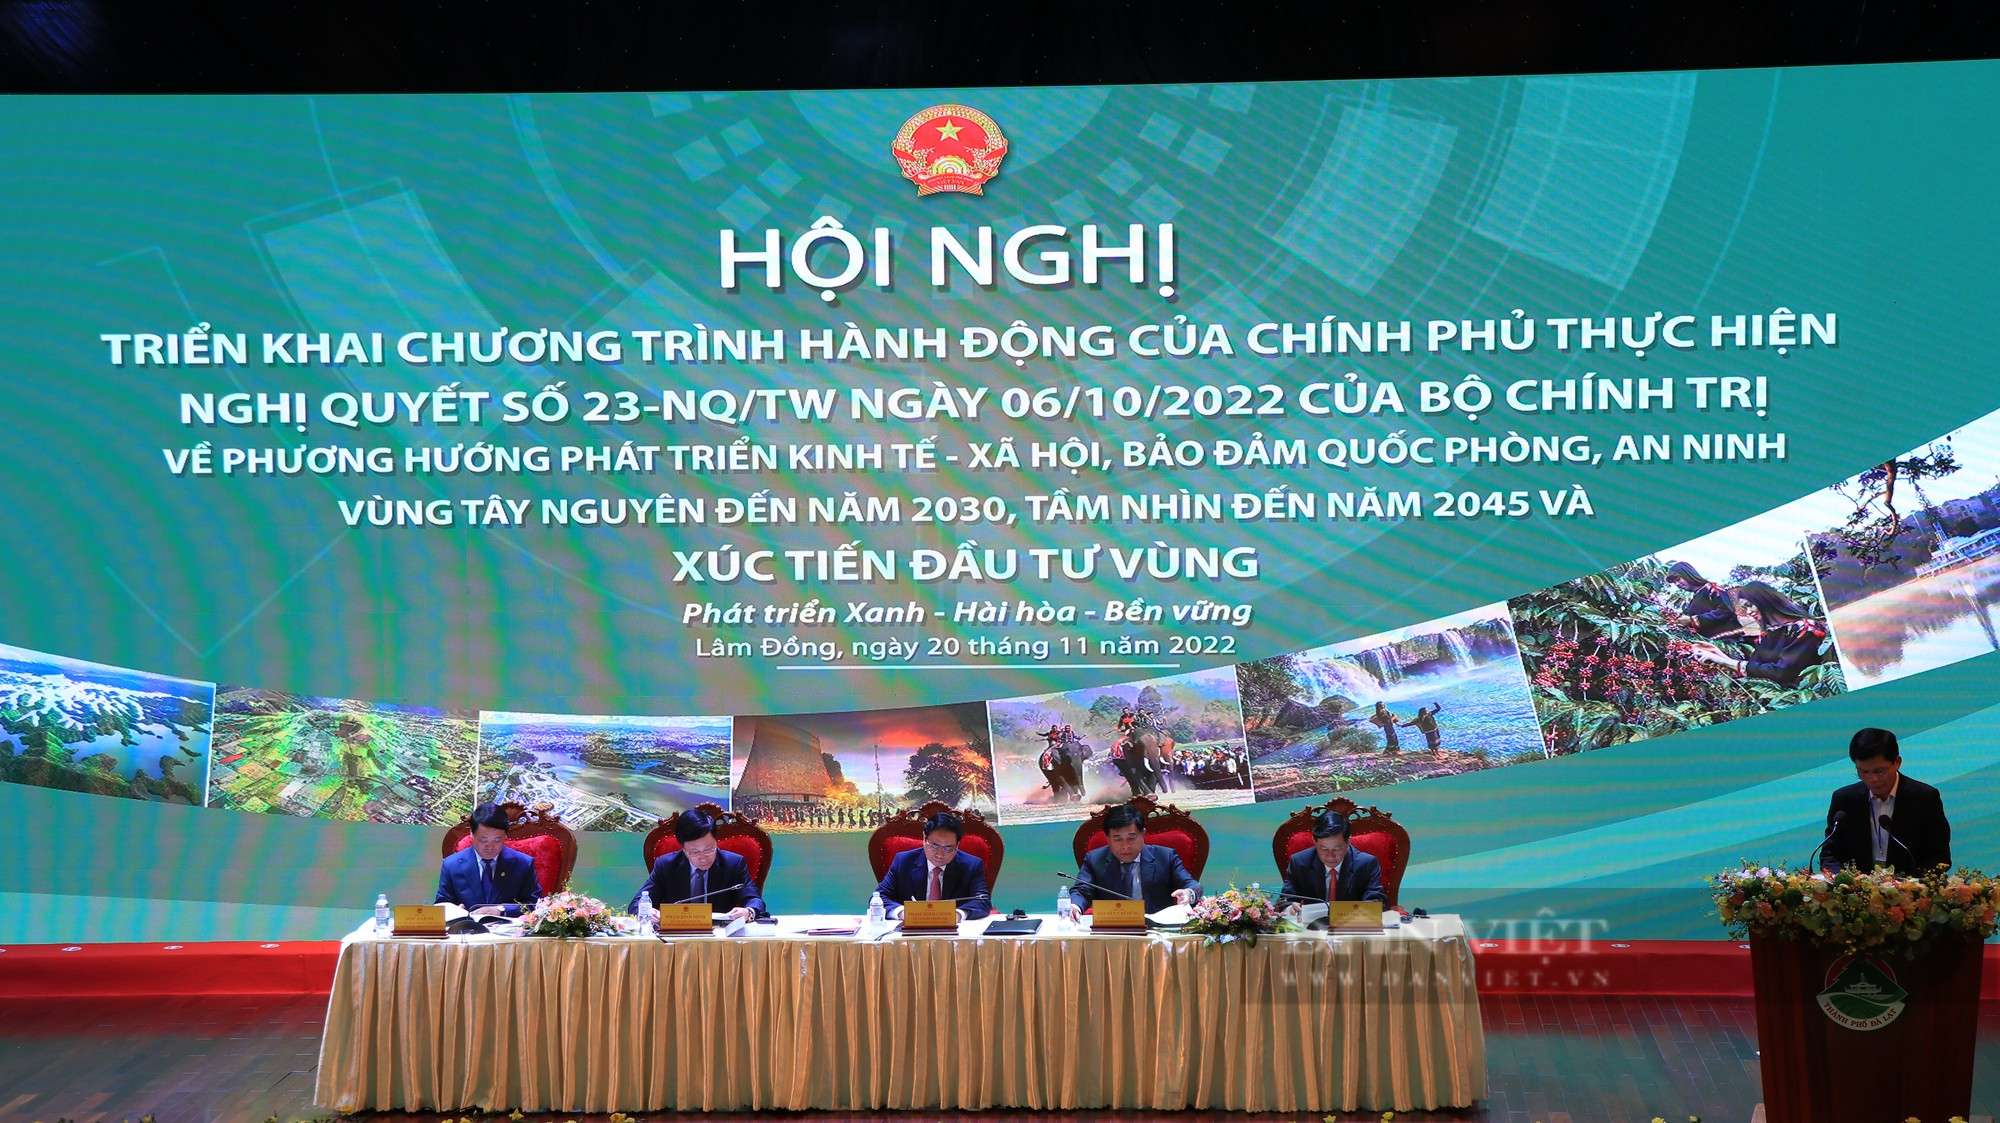 Thủ tướng Chính phủ Phạm Minh Chính cắt băng khai mạc triển lãm ảnh Tây Nguyên xanh hài hòa - bền vững - Ảnh 8.